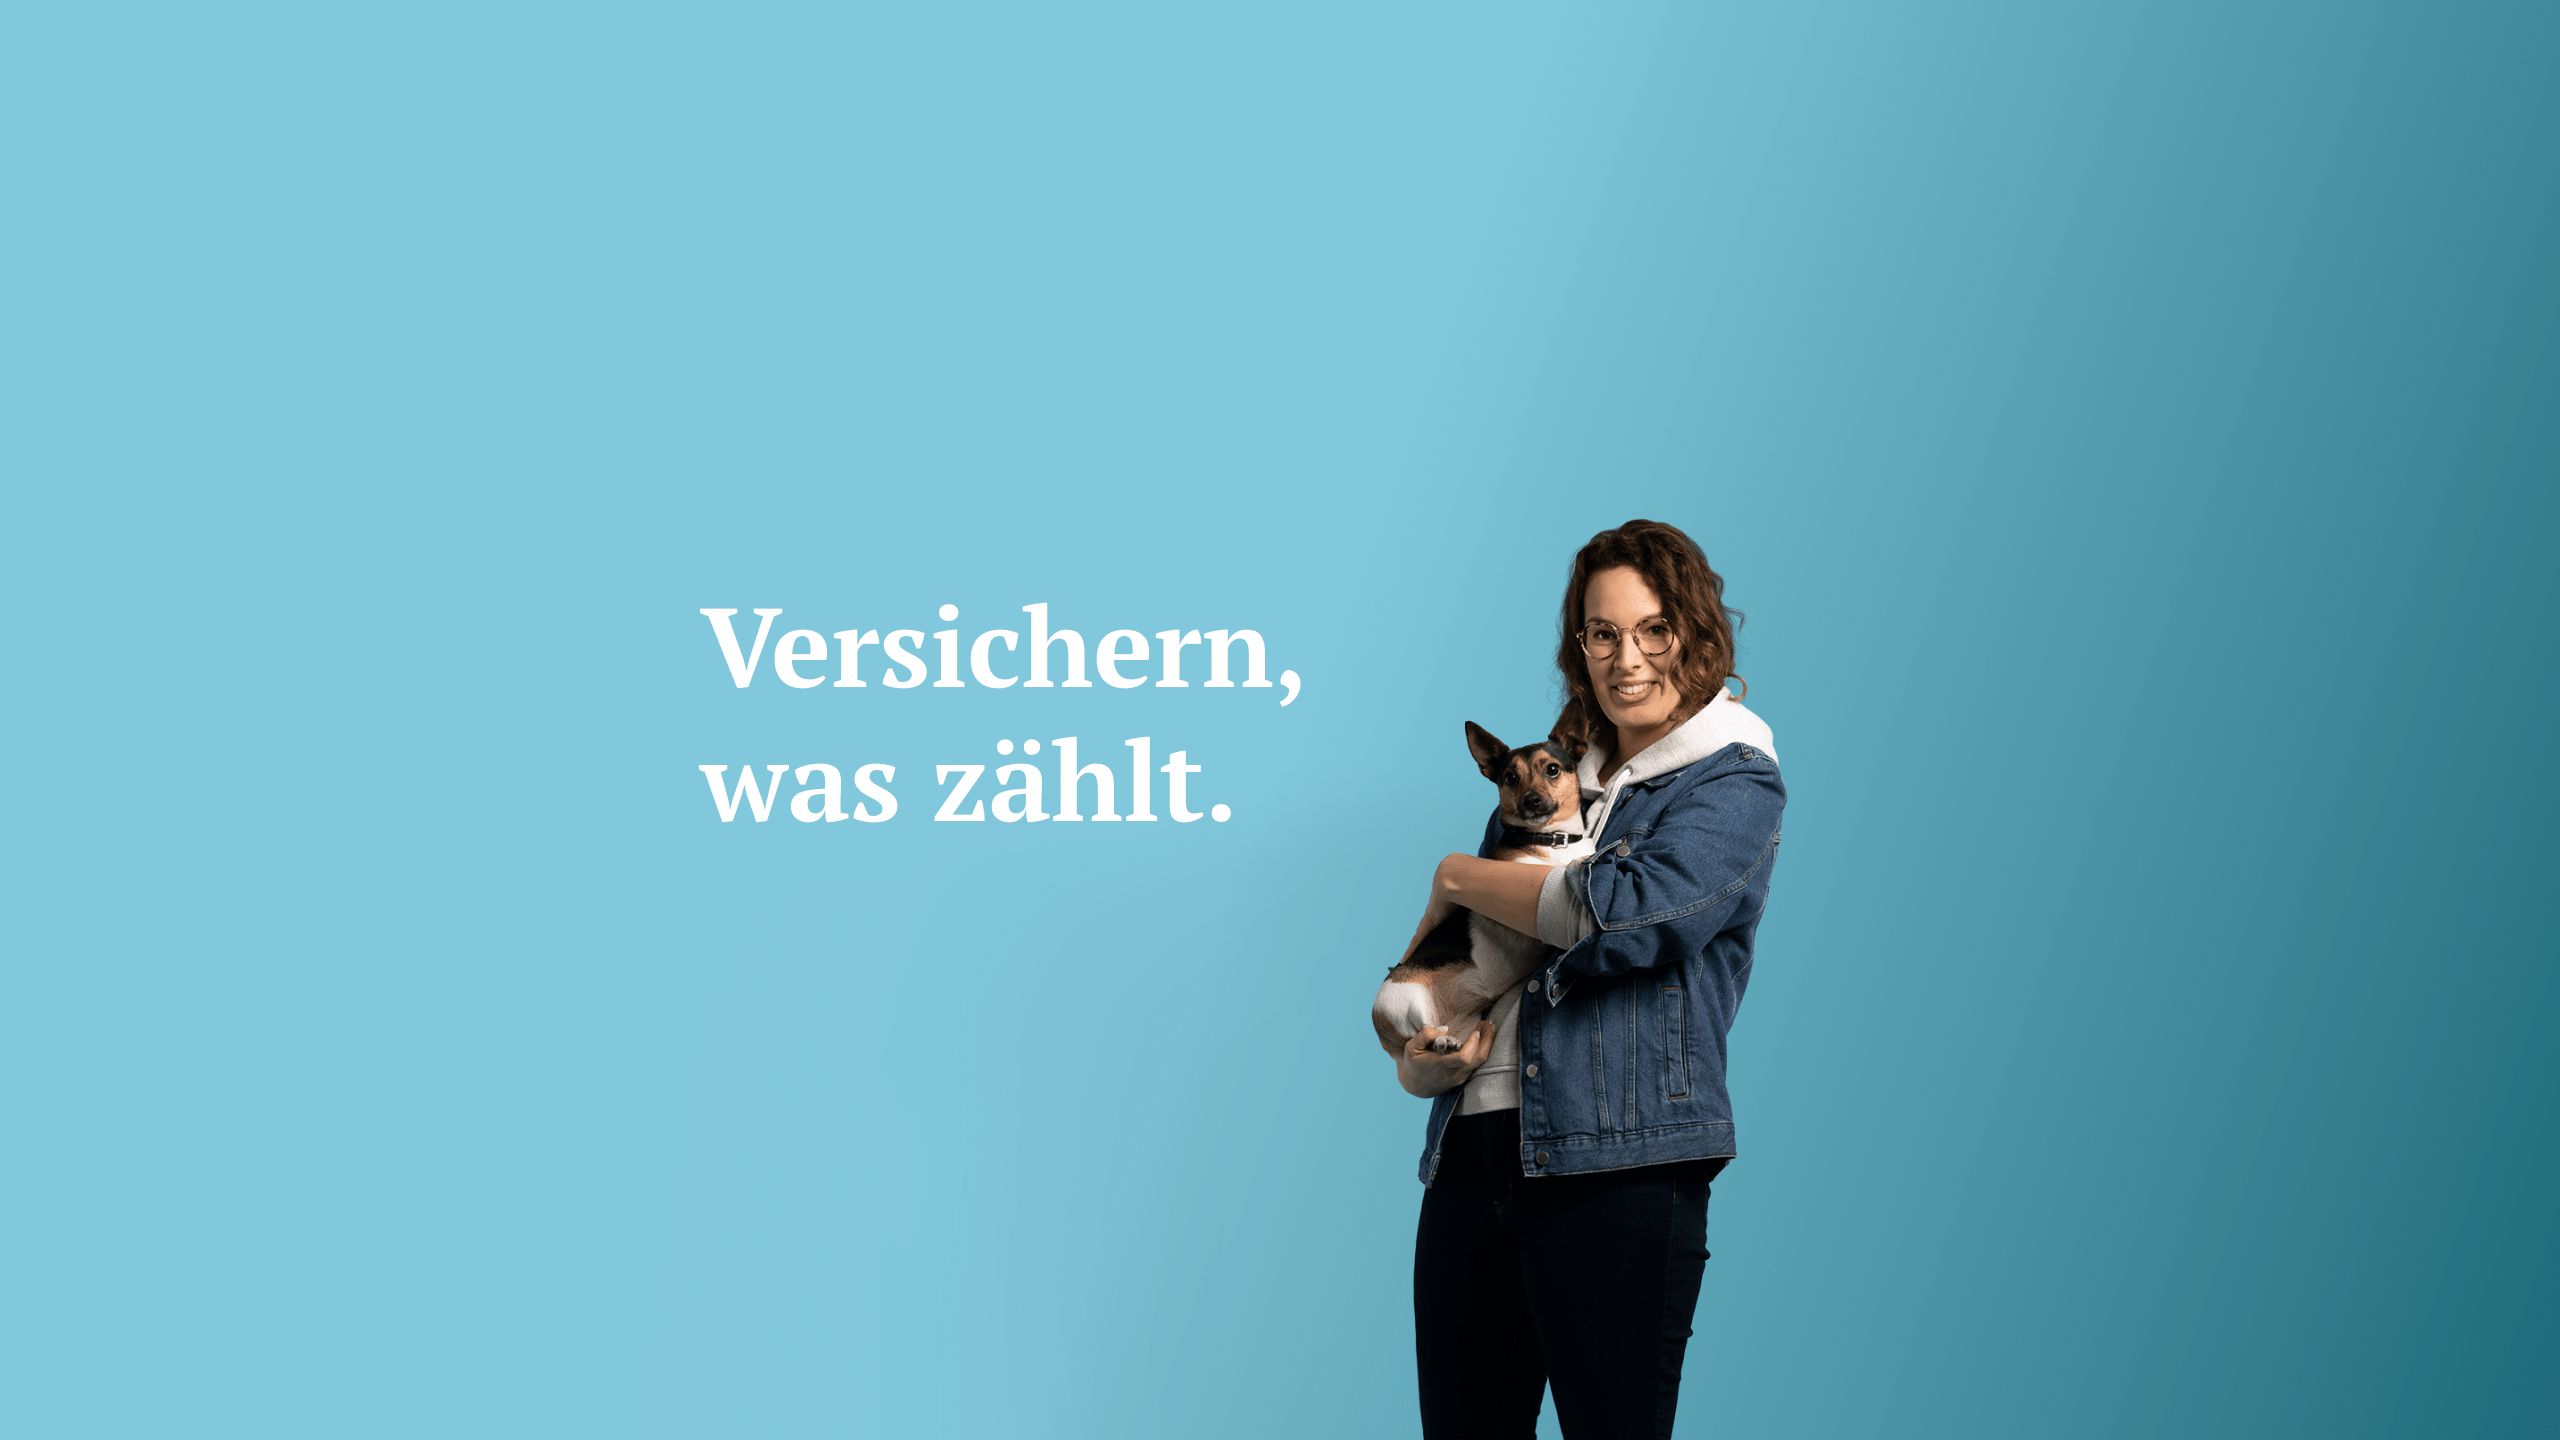 Adam Riese / startup from Kornwestheim / Background